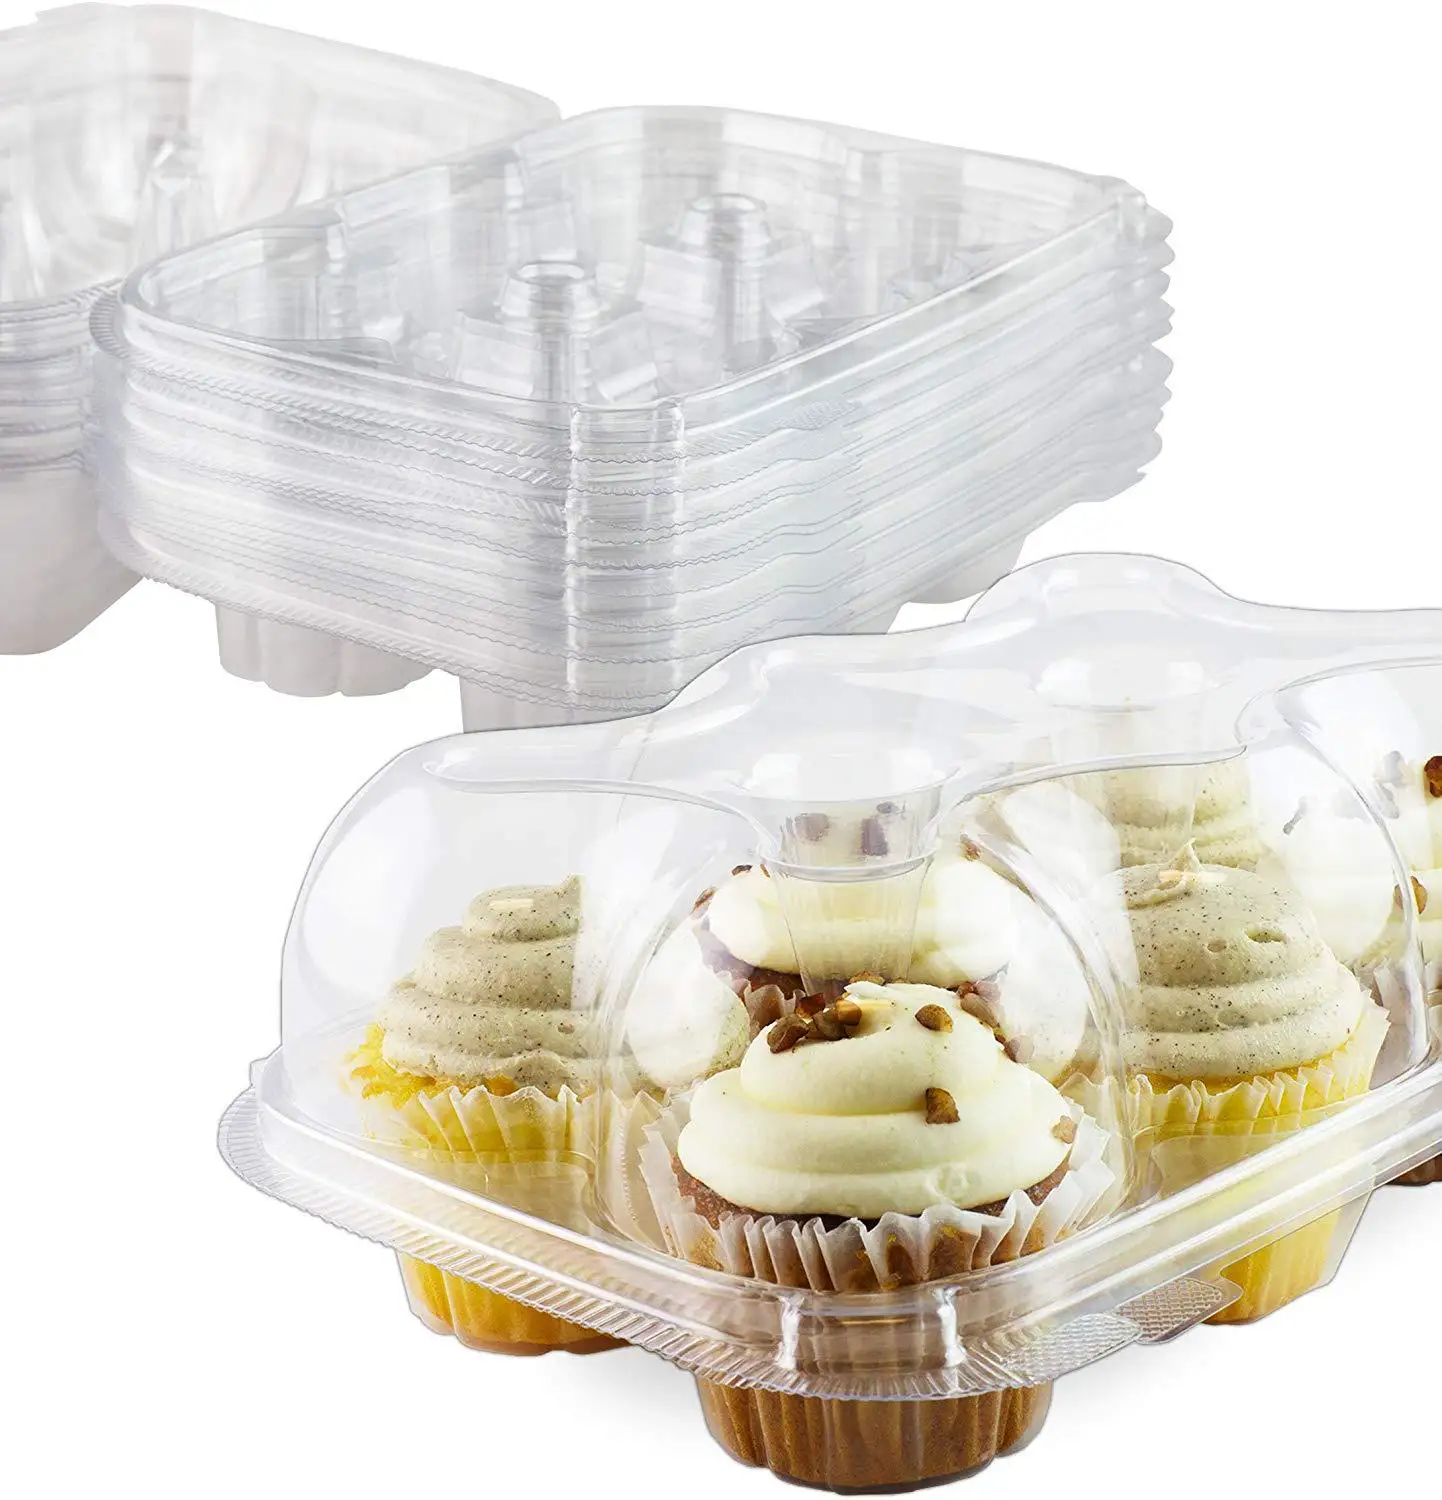 卸売透明カップケーキボックス6グリッドプラスチックカップケーキケース容器包装用 - Buy カップケーキカップ,クリアプラスチック製のカップ ケーキボックス,ミニカップケーキの包装 Product on Alibaba.com